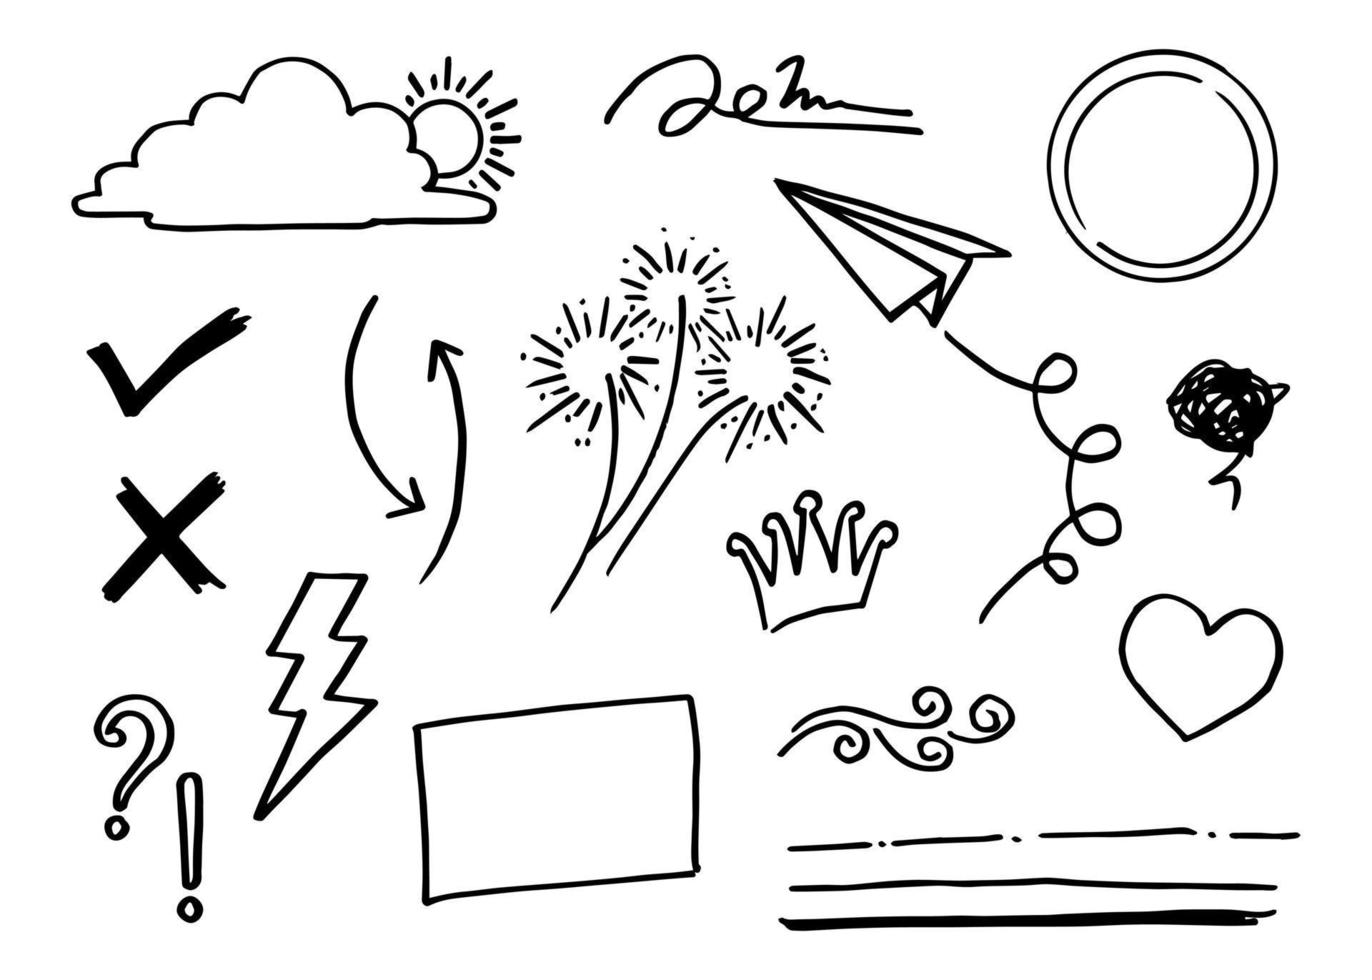 doodle vetor definido ilustração com vetor de estilo de arte de linha de desenho de mão. coroa, rei, sol, flecha, coração, amor, estrela, redemoinho, swoops, ênfase, para design de conceito